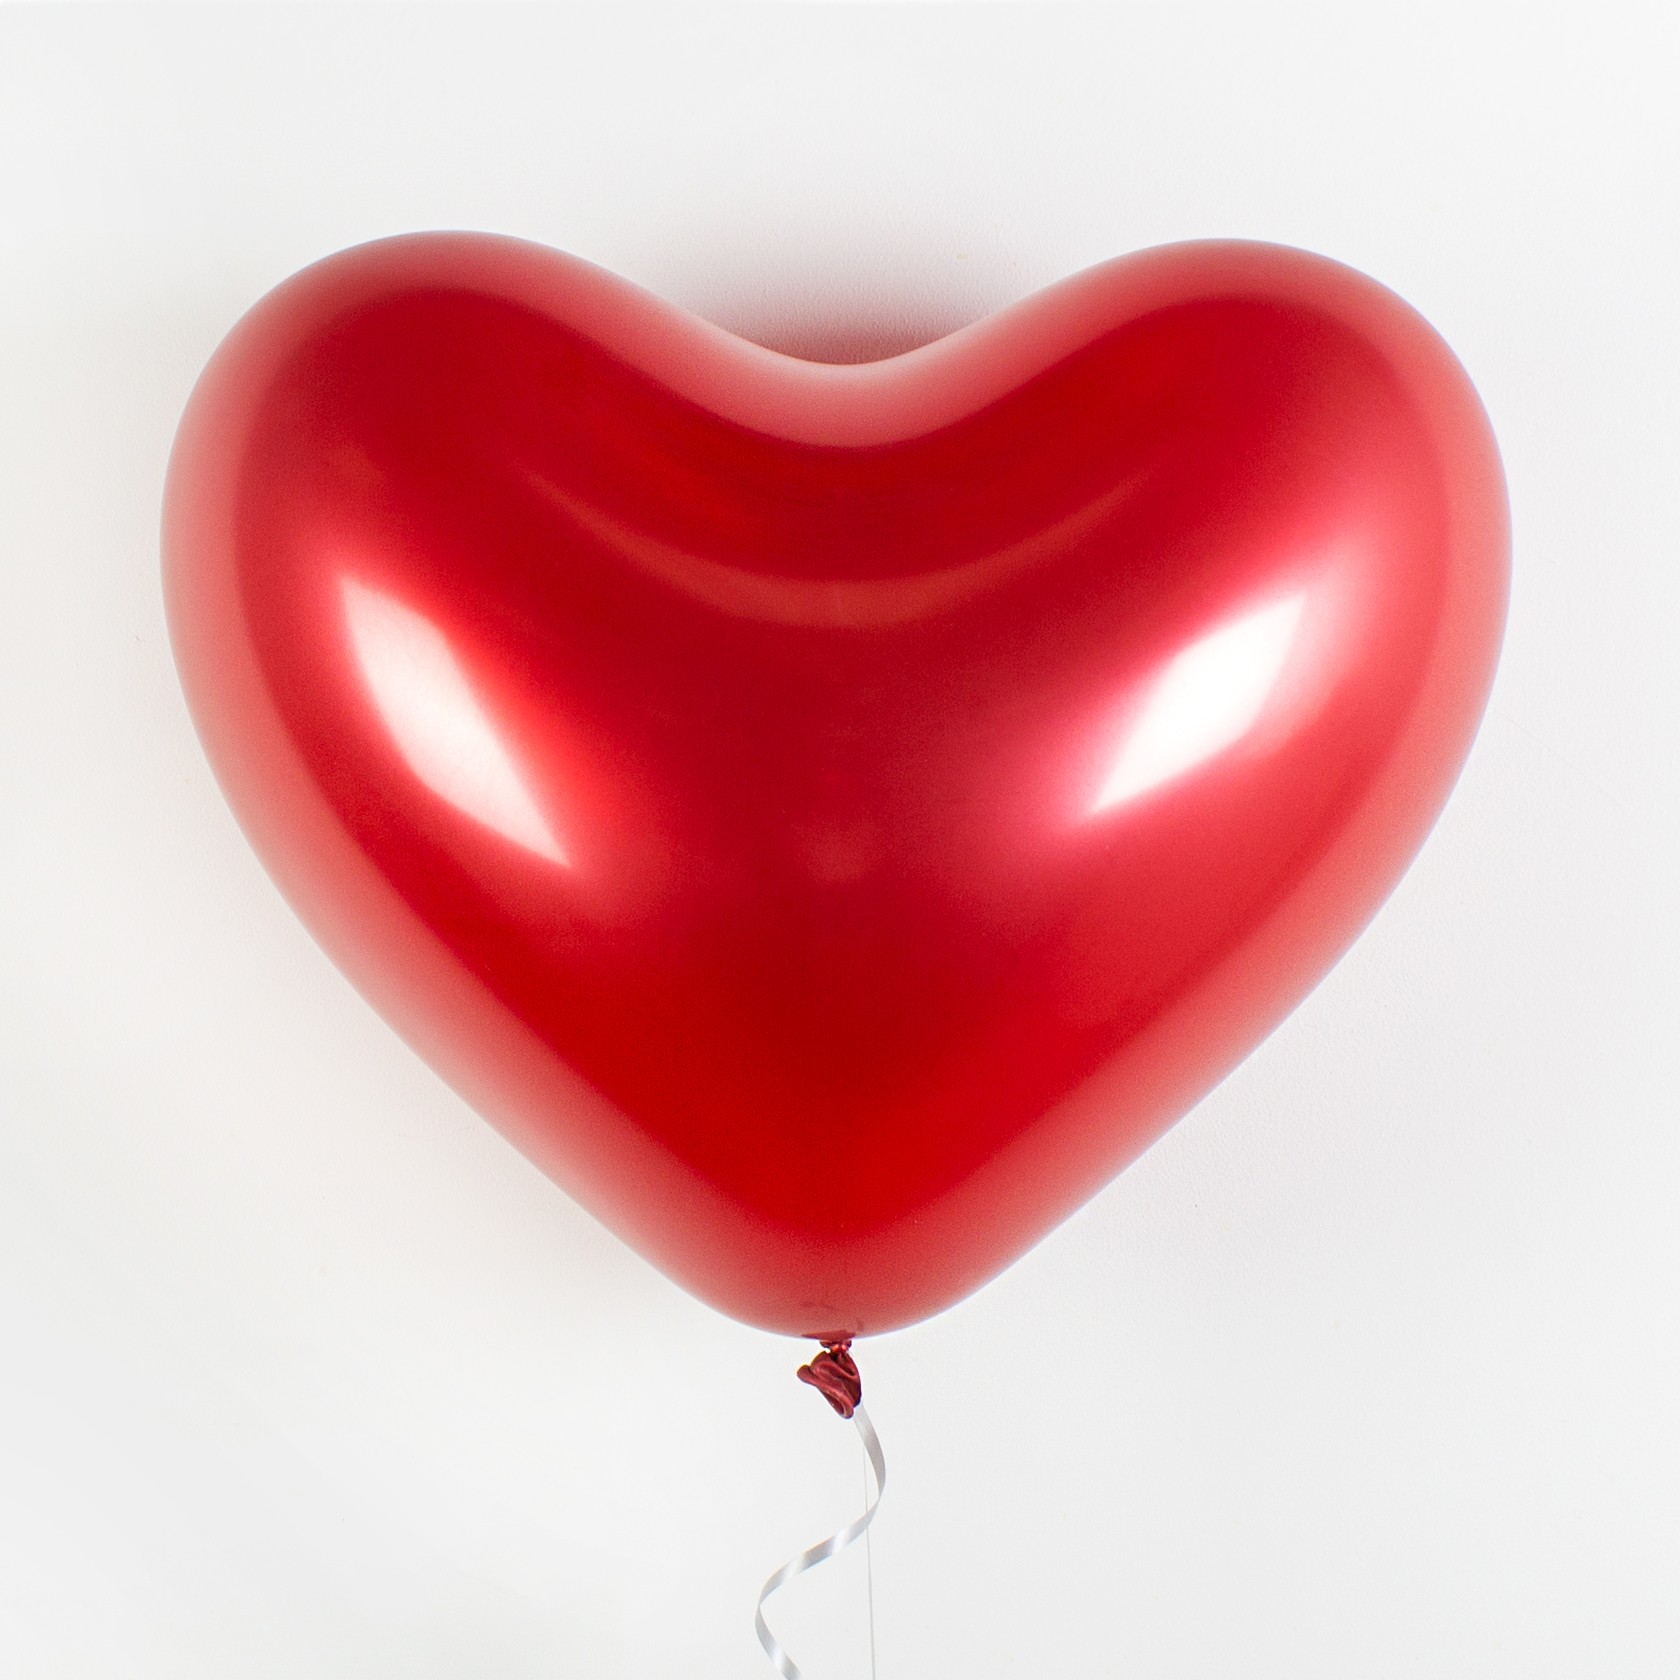 Воздушные шары (14 дюймов) «Сердца Chrome» красные